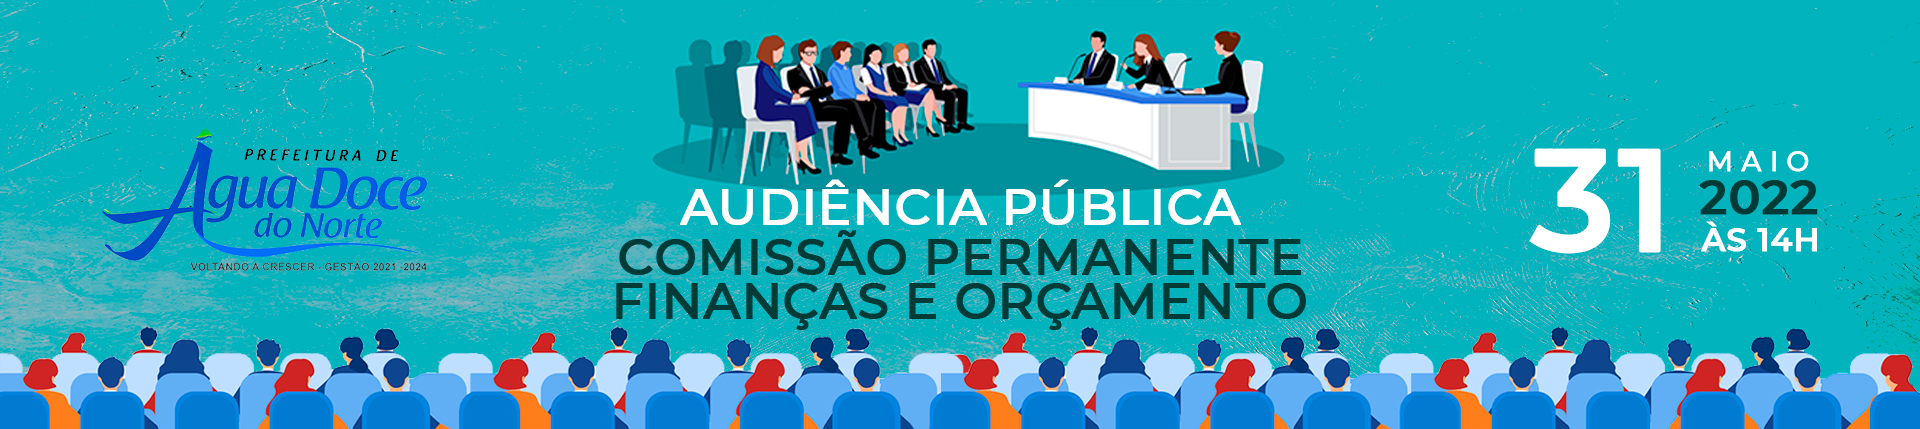 Audiência Pública - Comissão Permanente de Finanças e Orçamento